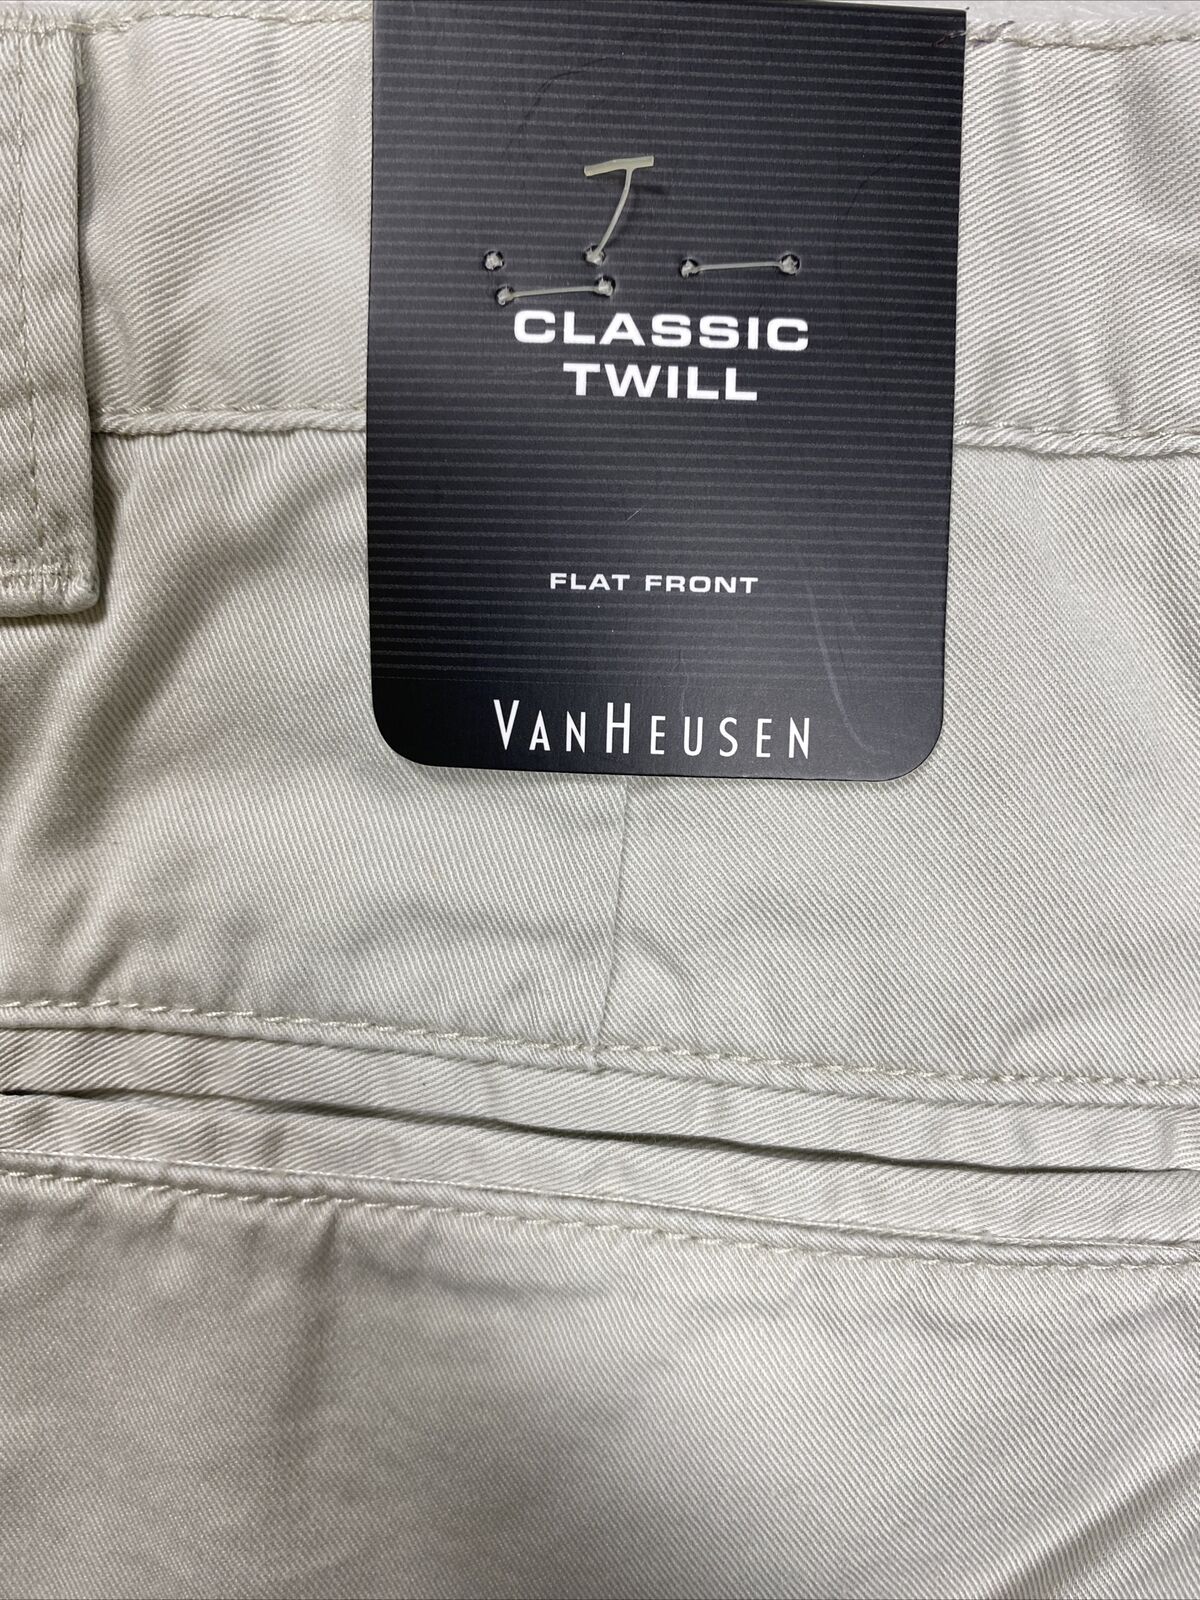 NEW Van Heusen Men's Beige Cotton Classic Twill Shorts - 34